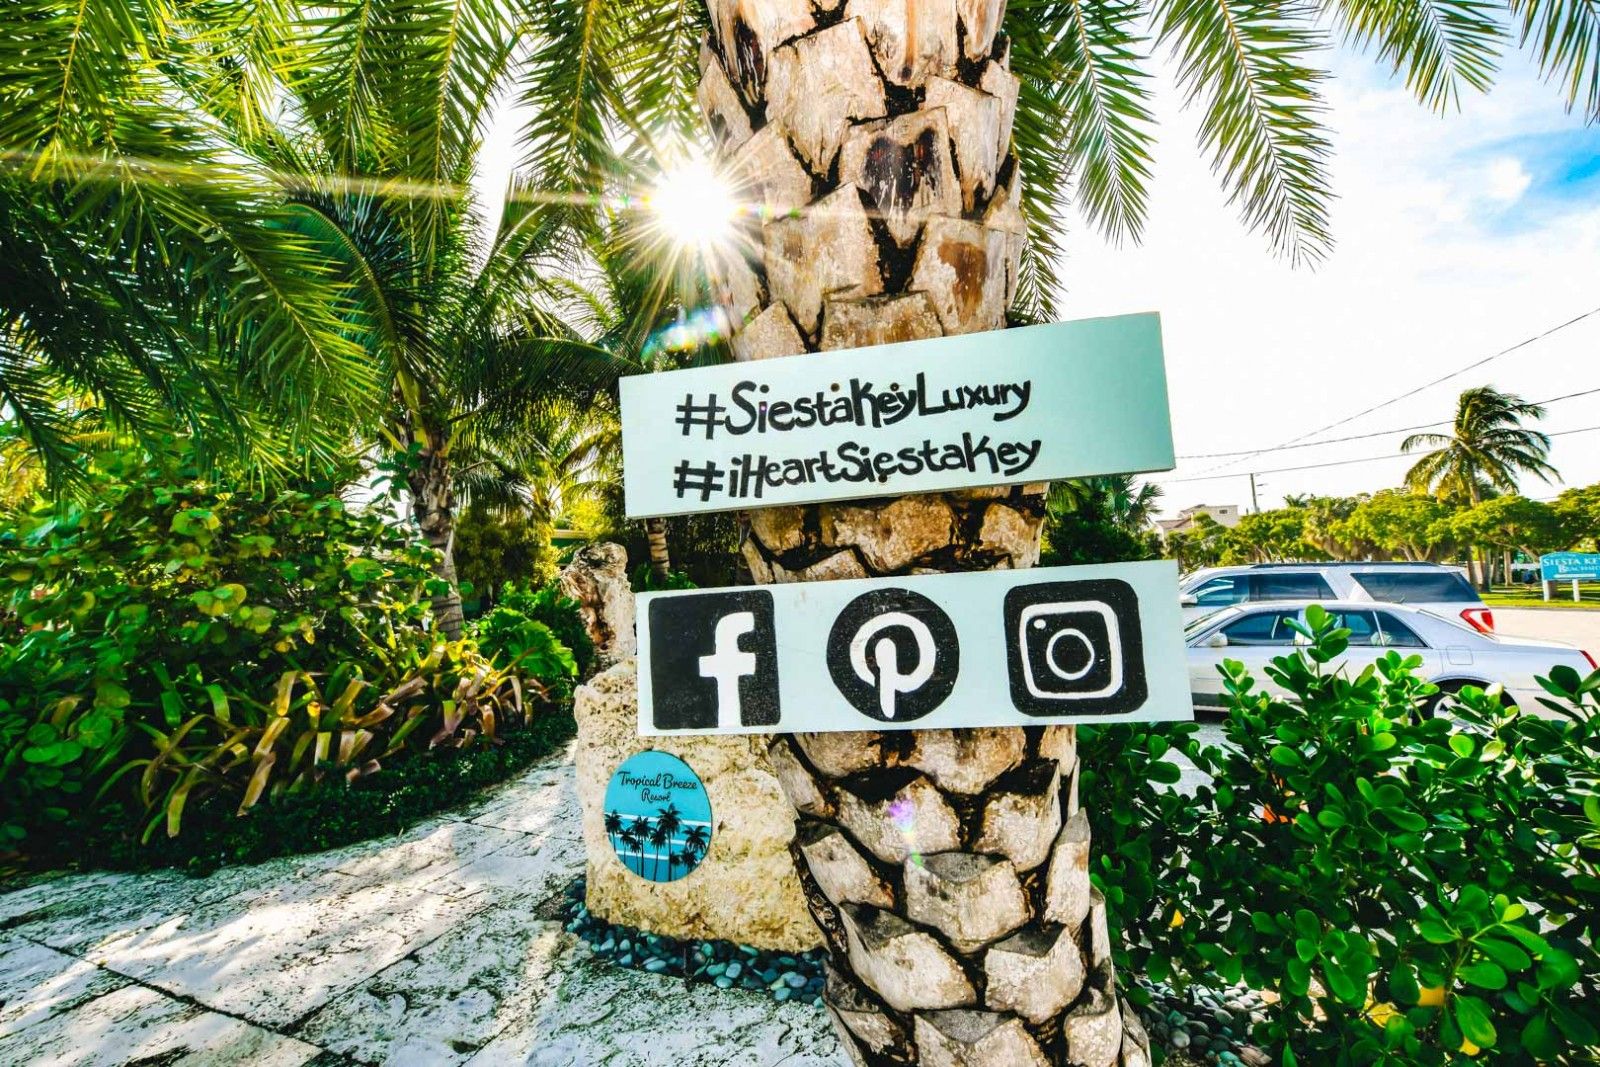 tropical breeze resort social media sign